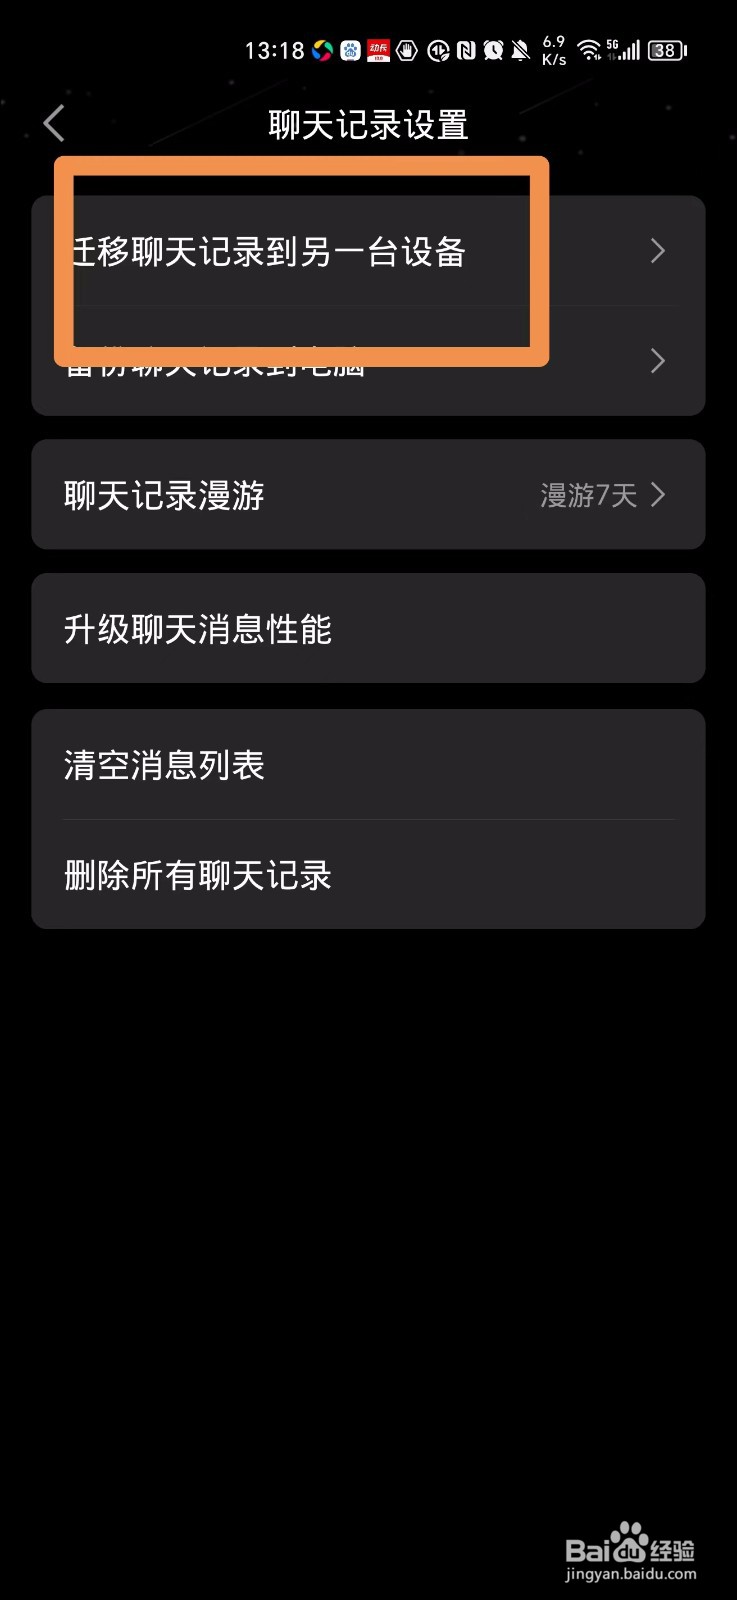 换手机了QQ聊天记录怎么全部迁移过去